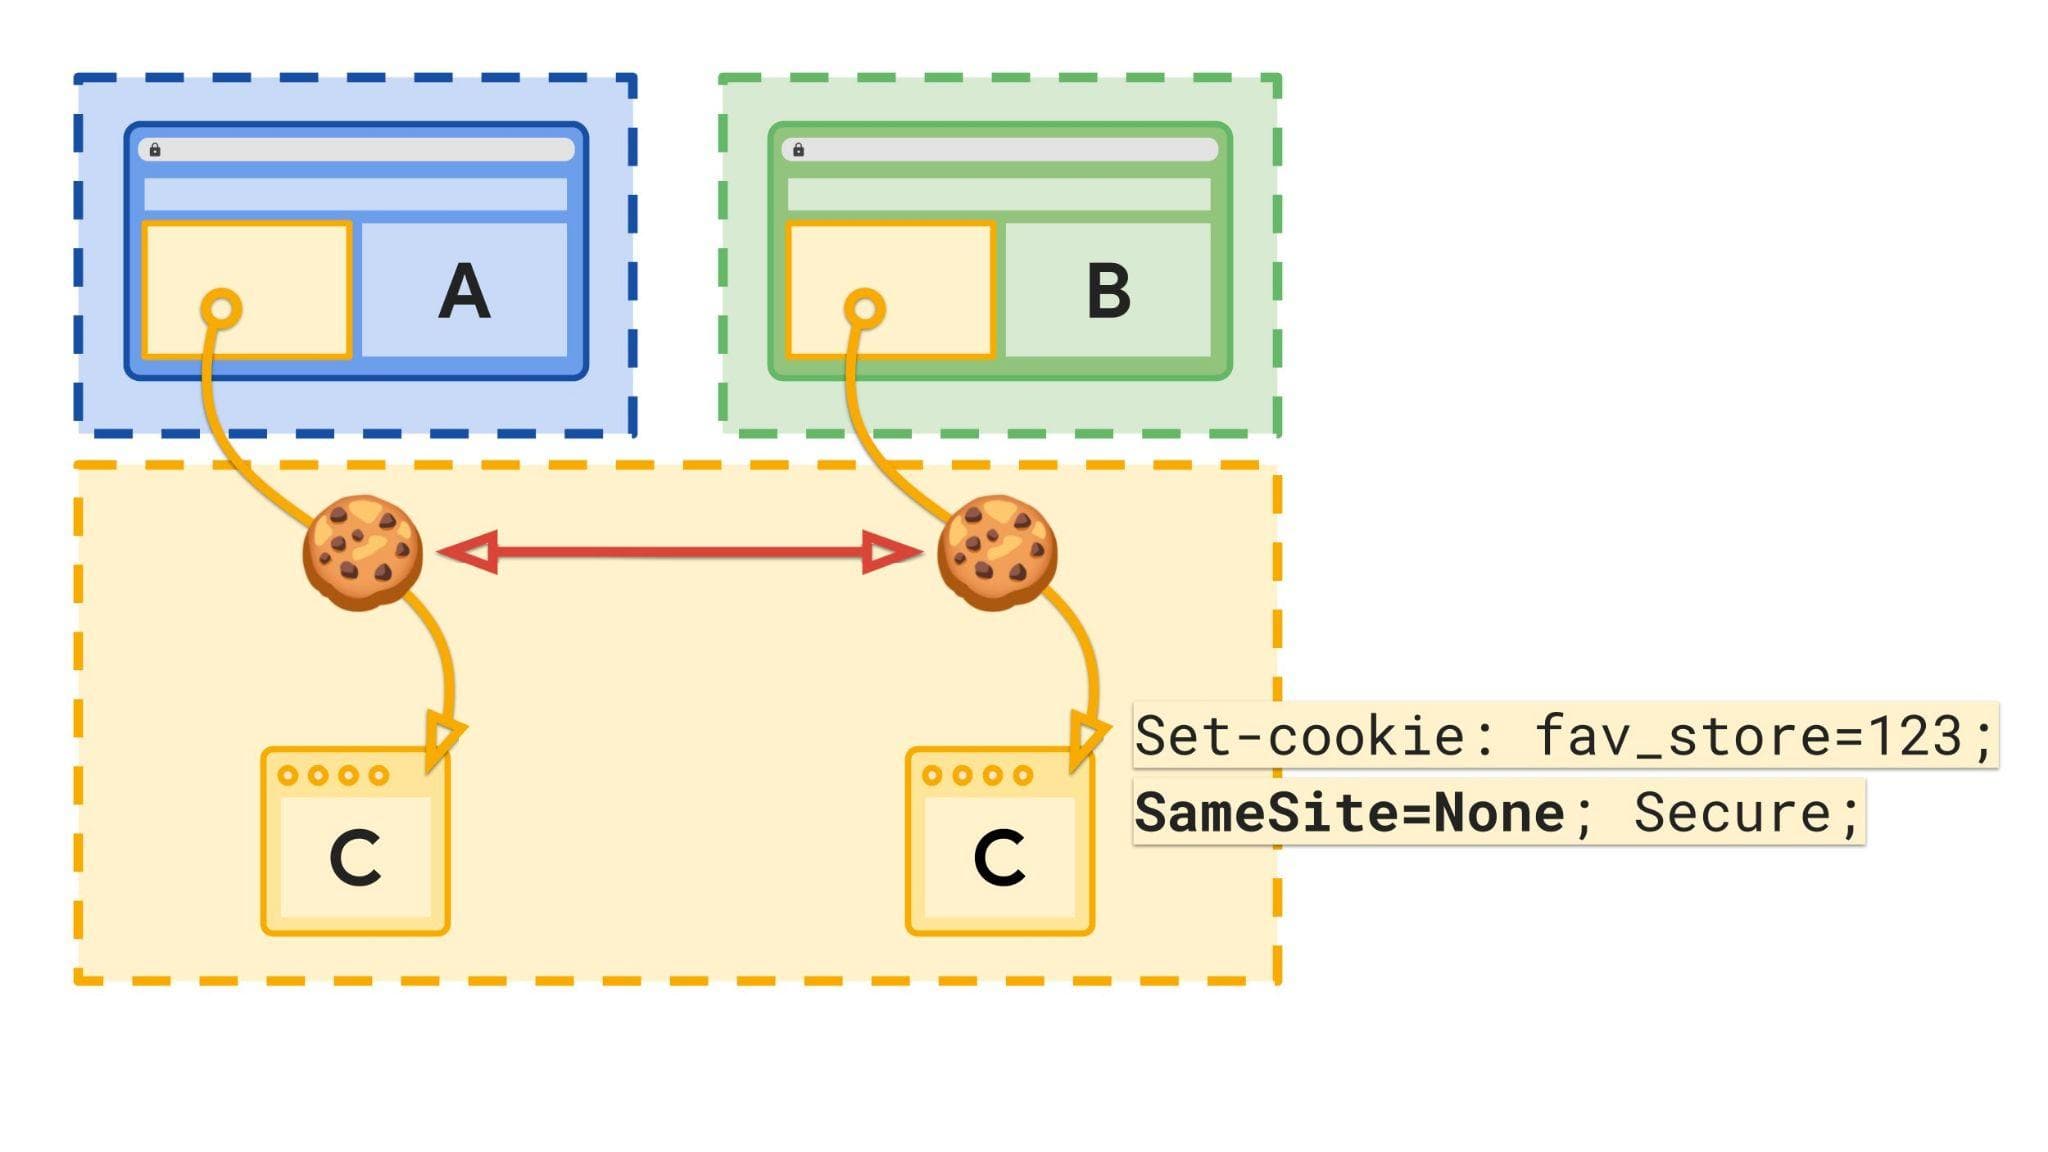 תרשים שמוצגים בו אתרים ואחסון עם קובצי cookie שלא מחולקים למחיצות.